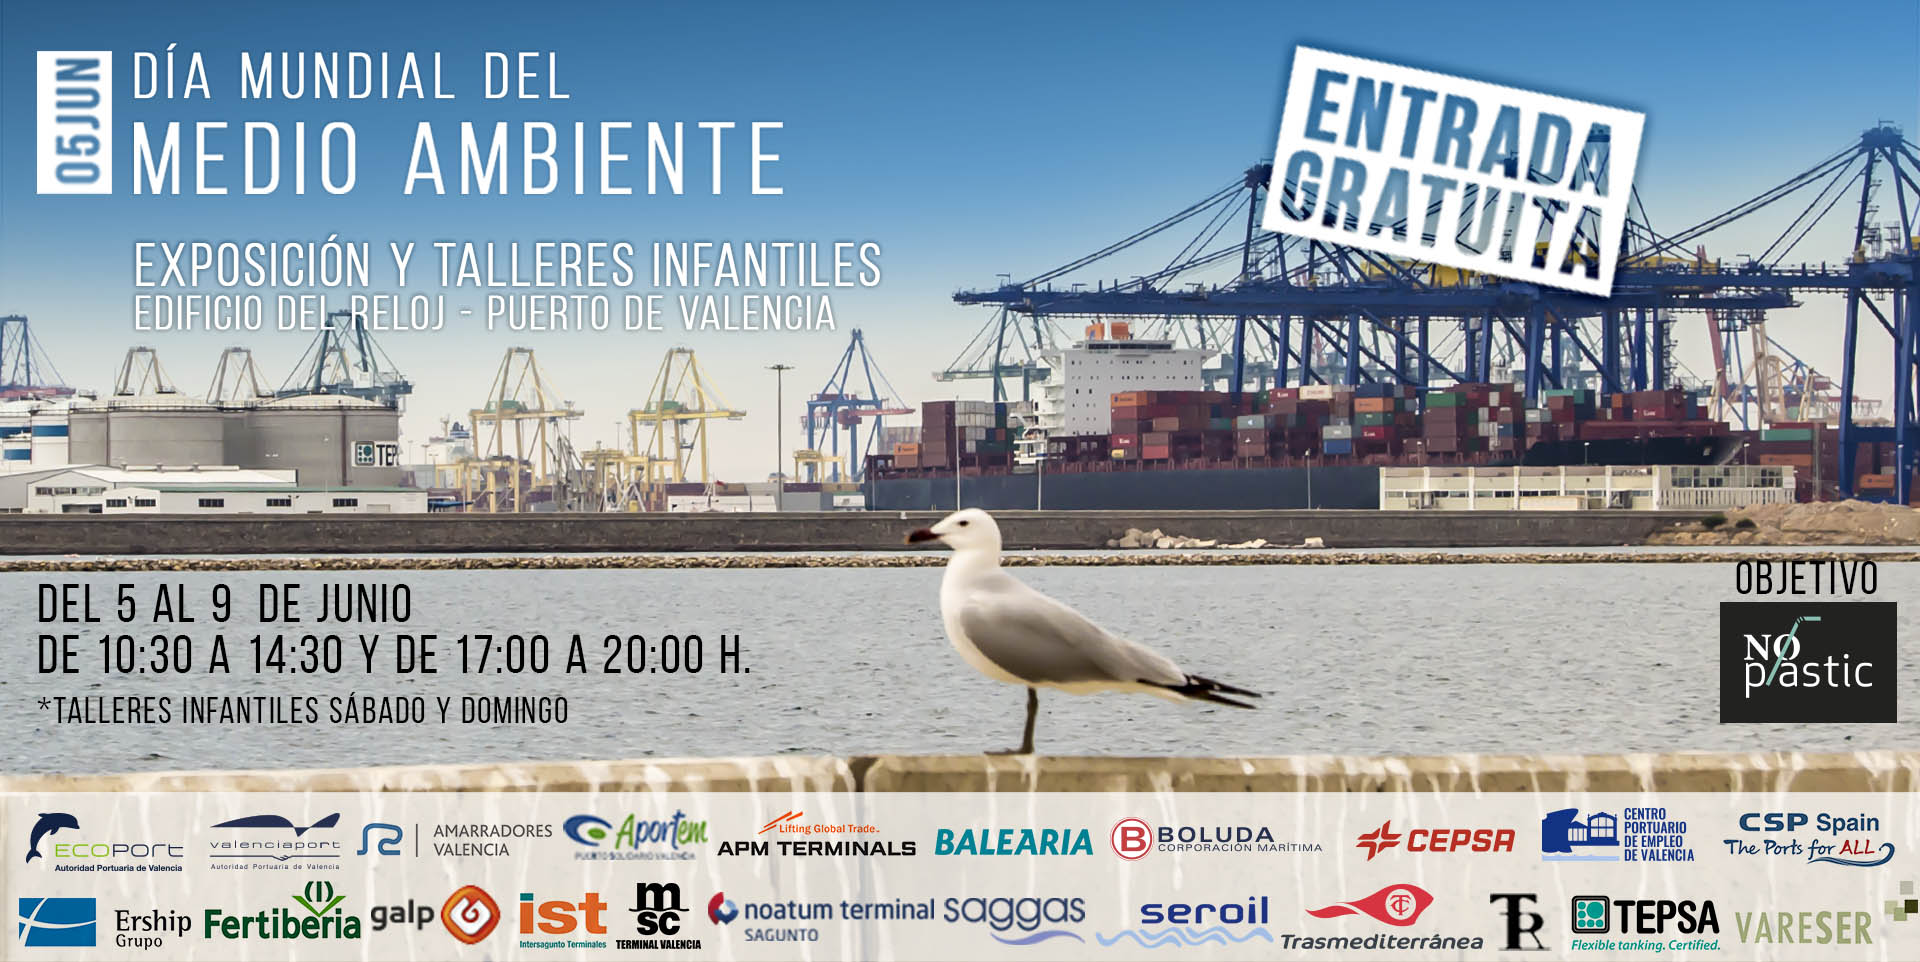 La comunidad portuaria de Valencia se vuelca con el Día Mundial del Medio Ambiente